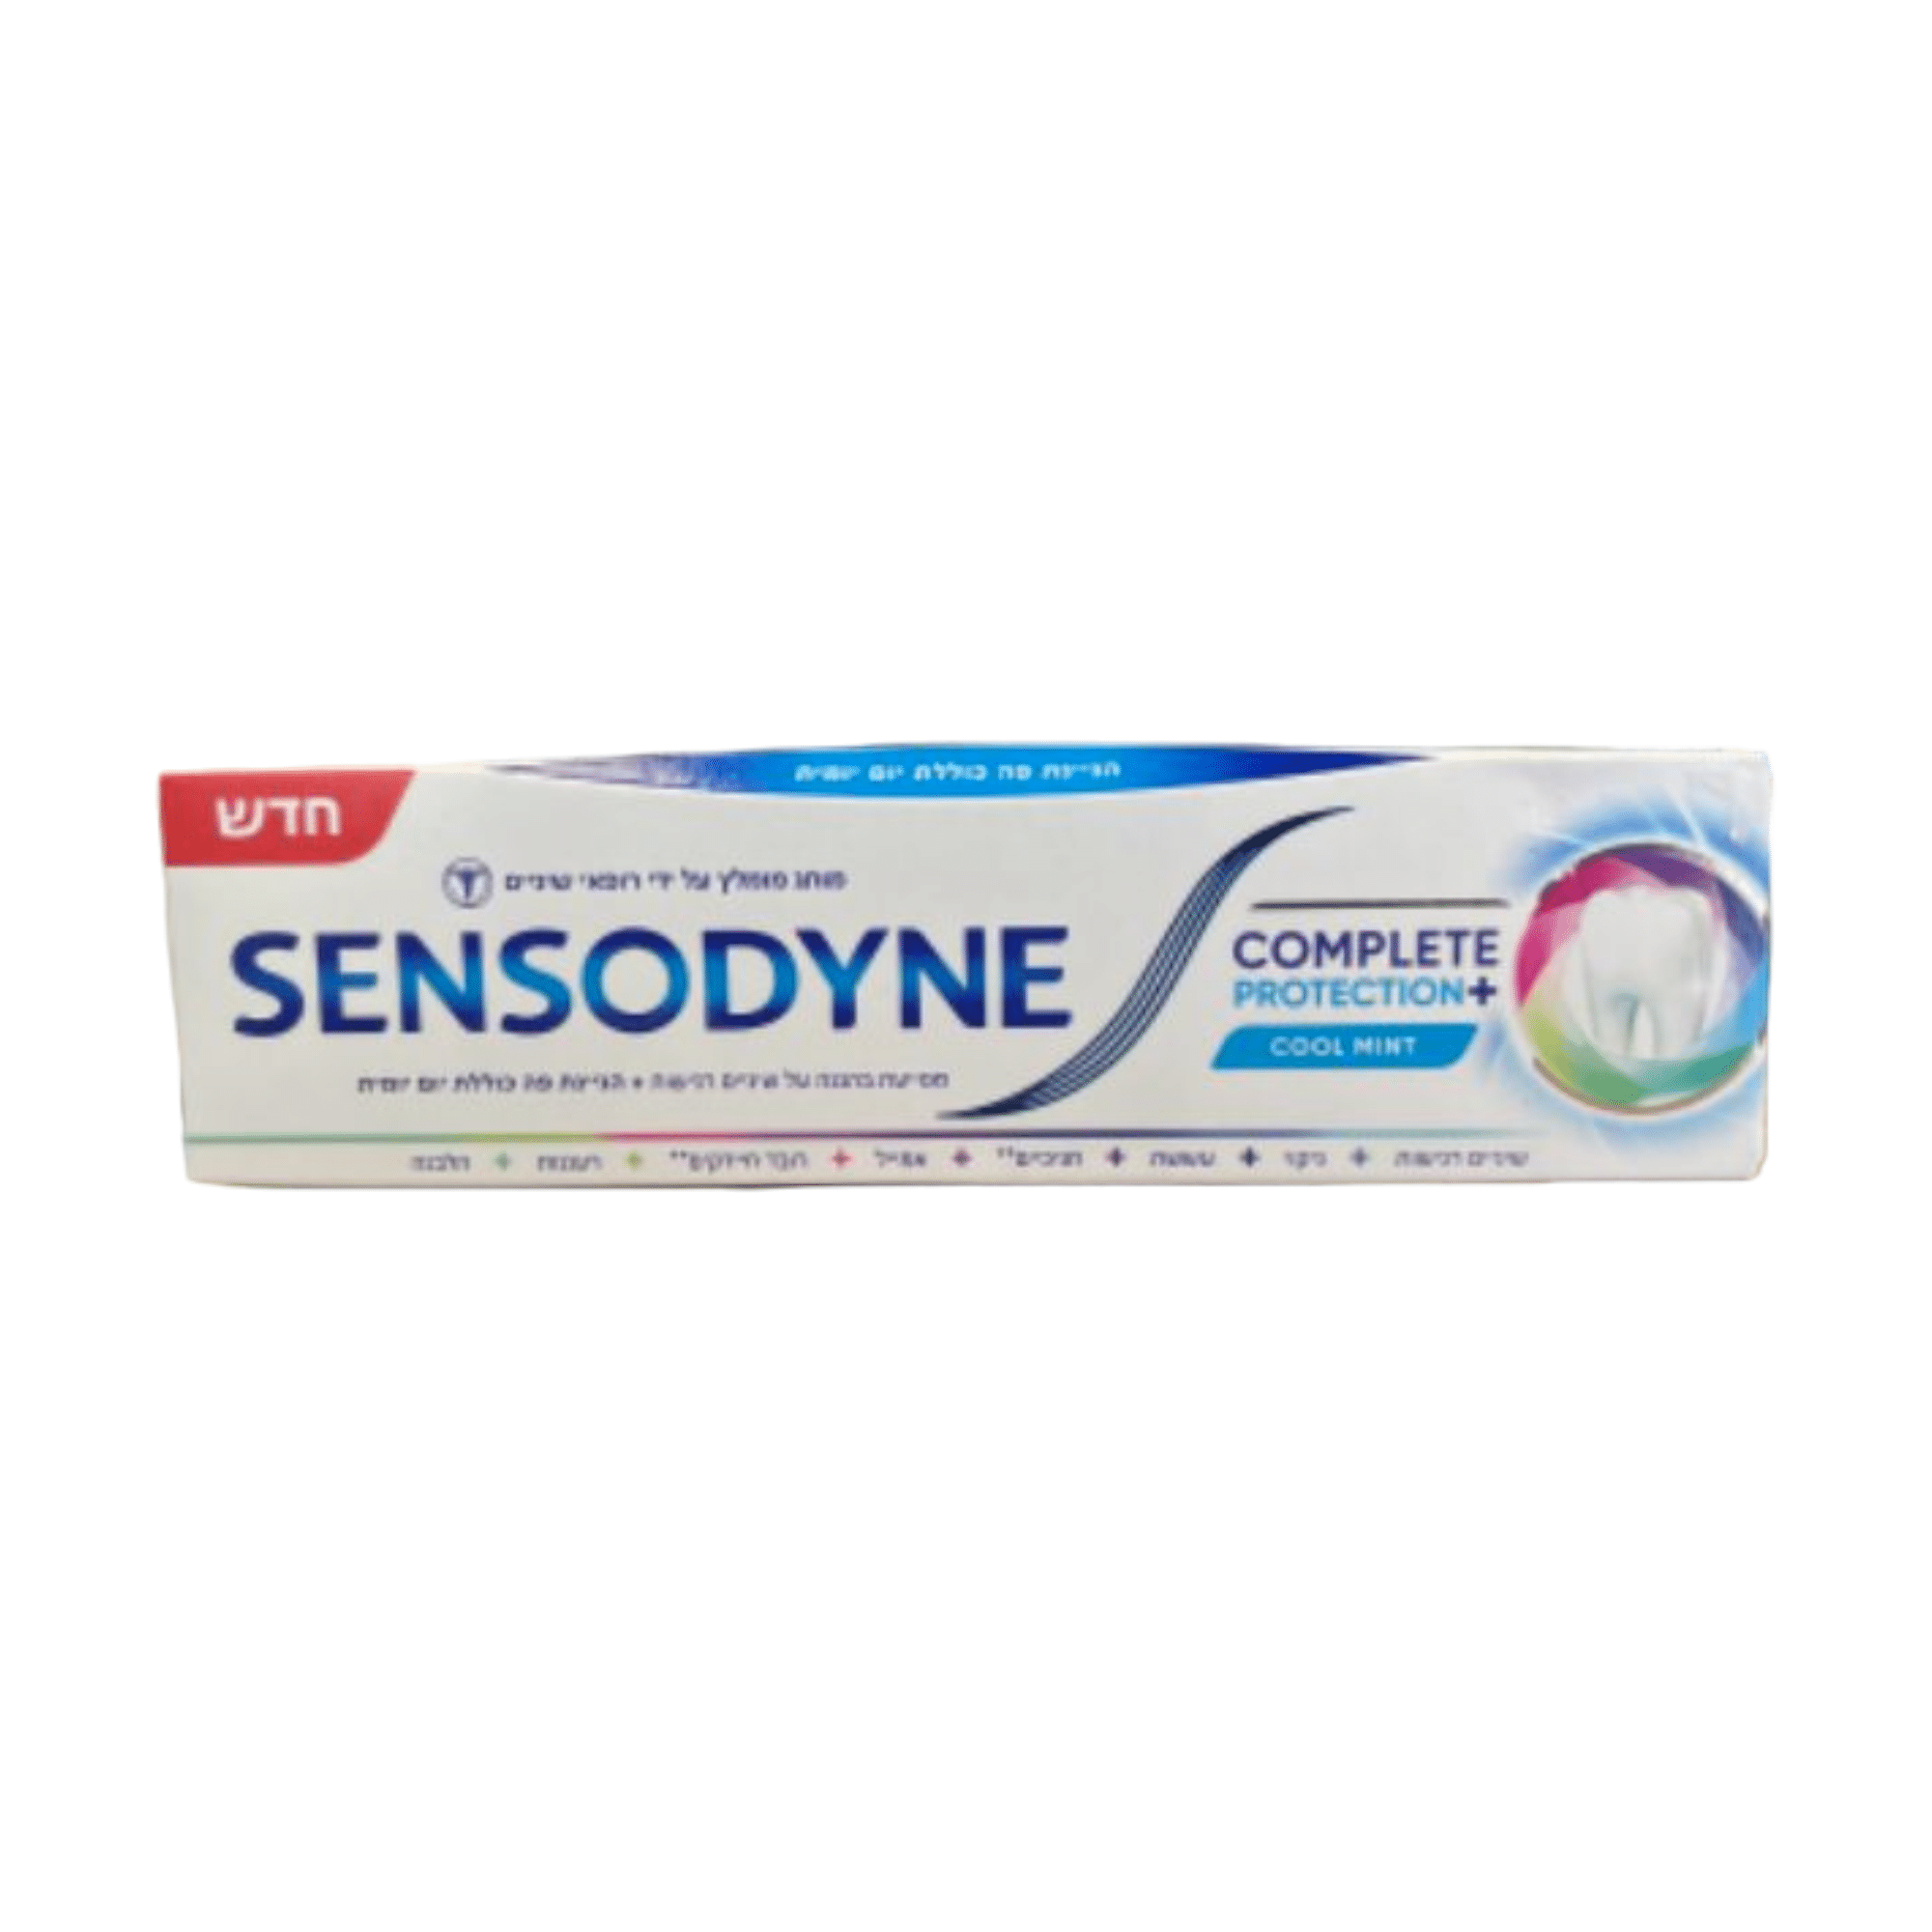 SENSODYNE Complete Protection בהגנה על שיניים רגישות + הגיינת פה